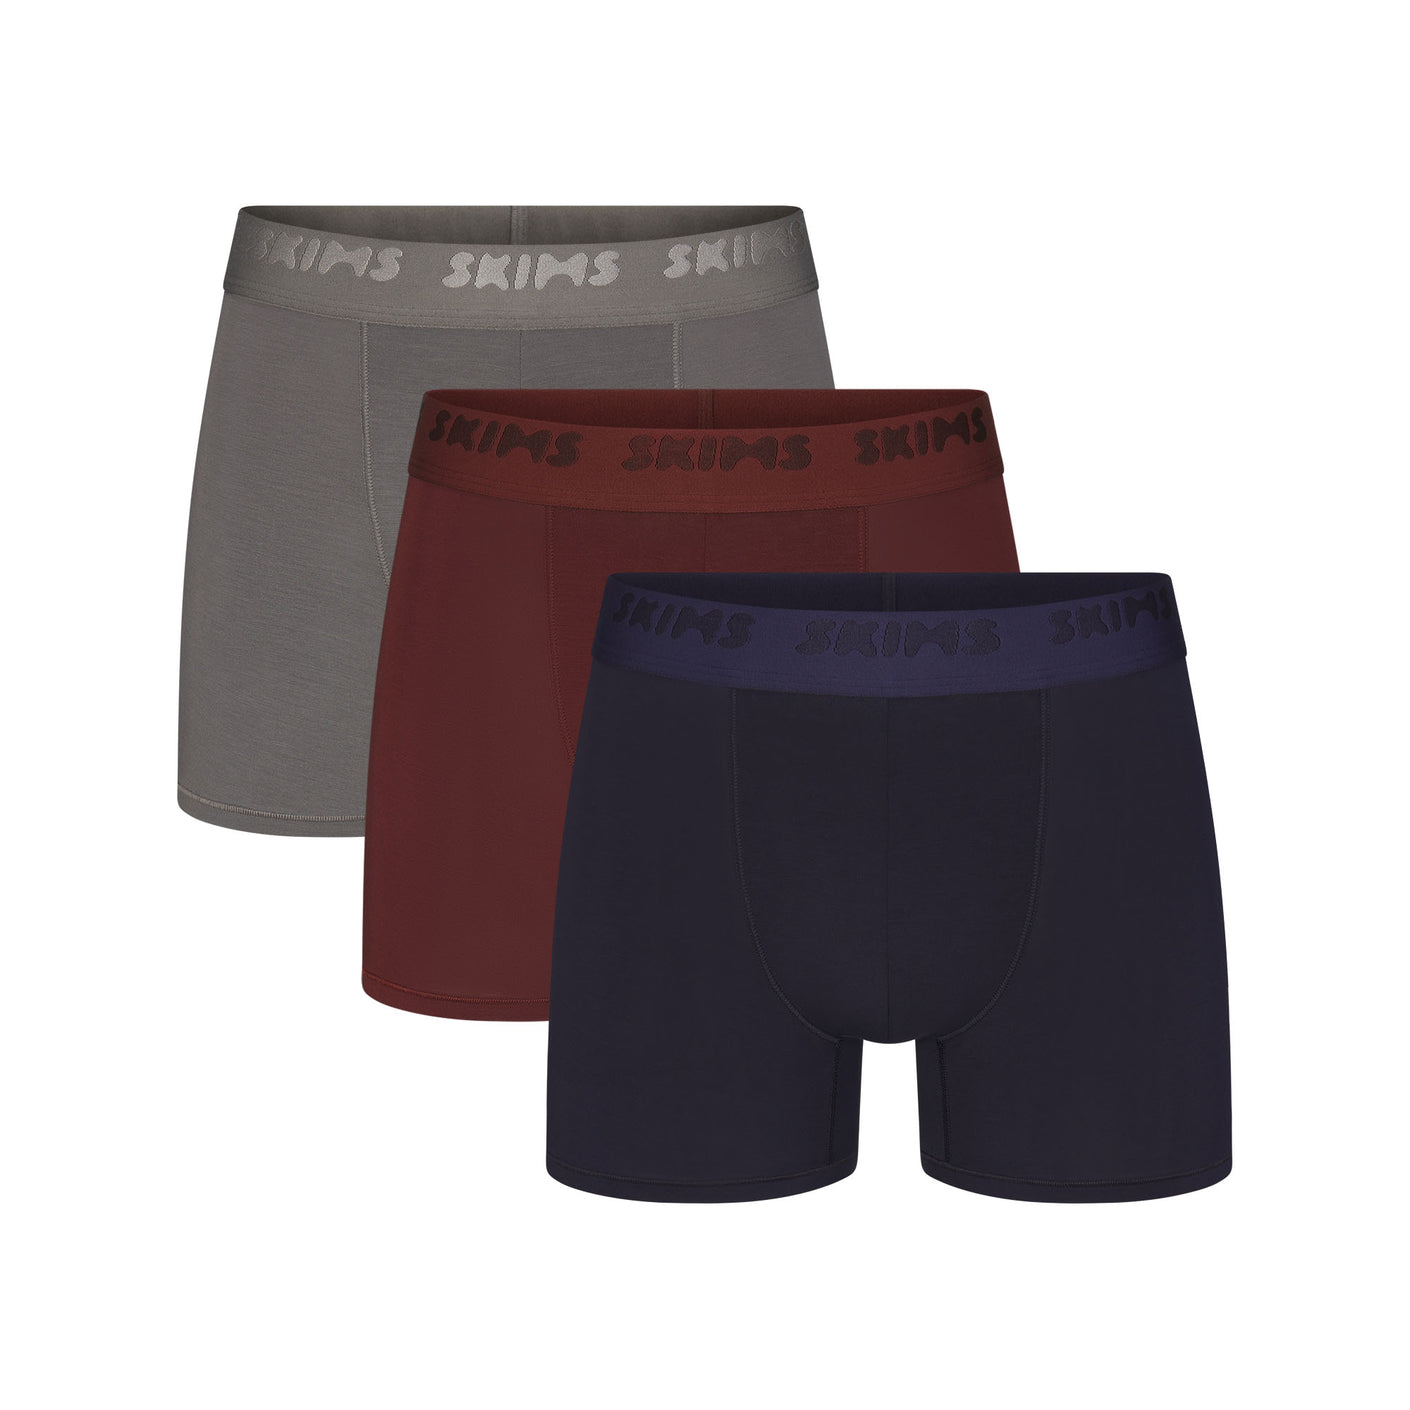 Essentials Men's Underwear Briefs Cotton Stretch Black/Gray Size  Small S